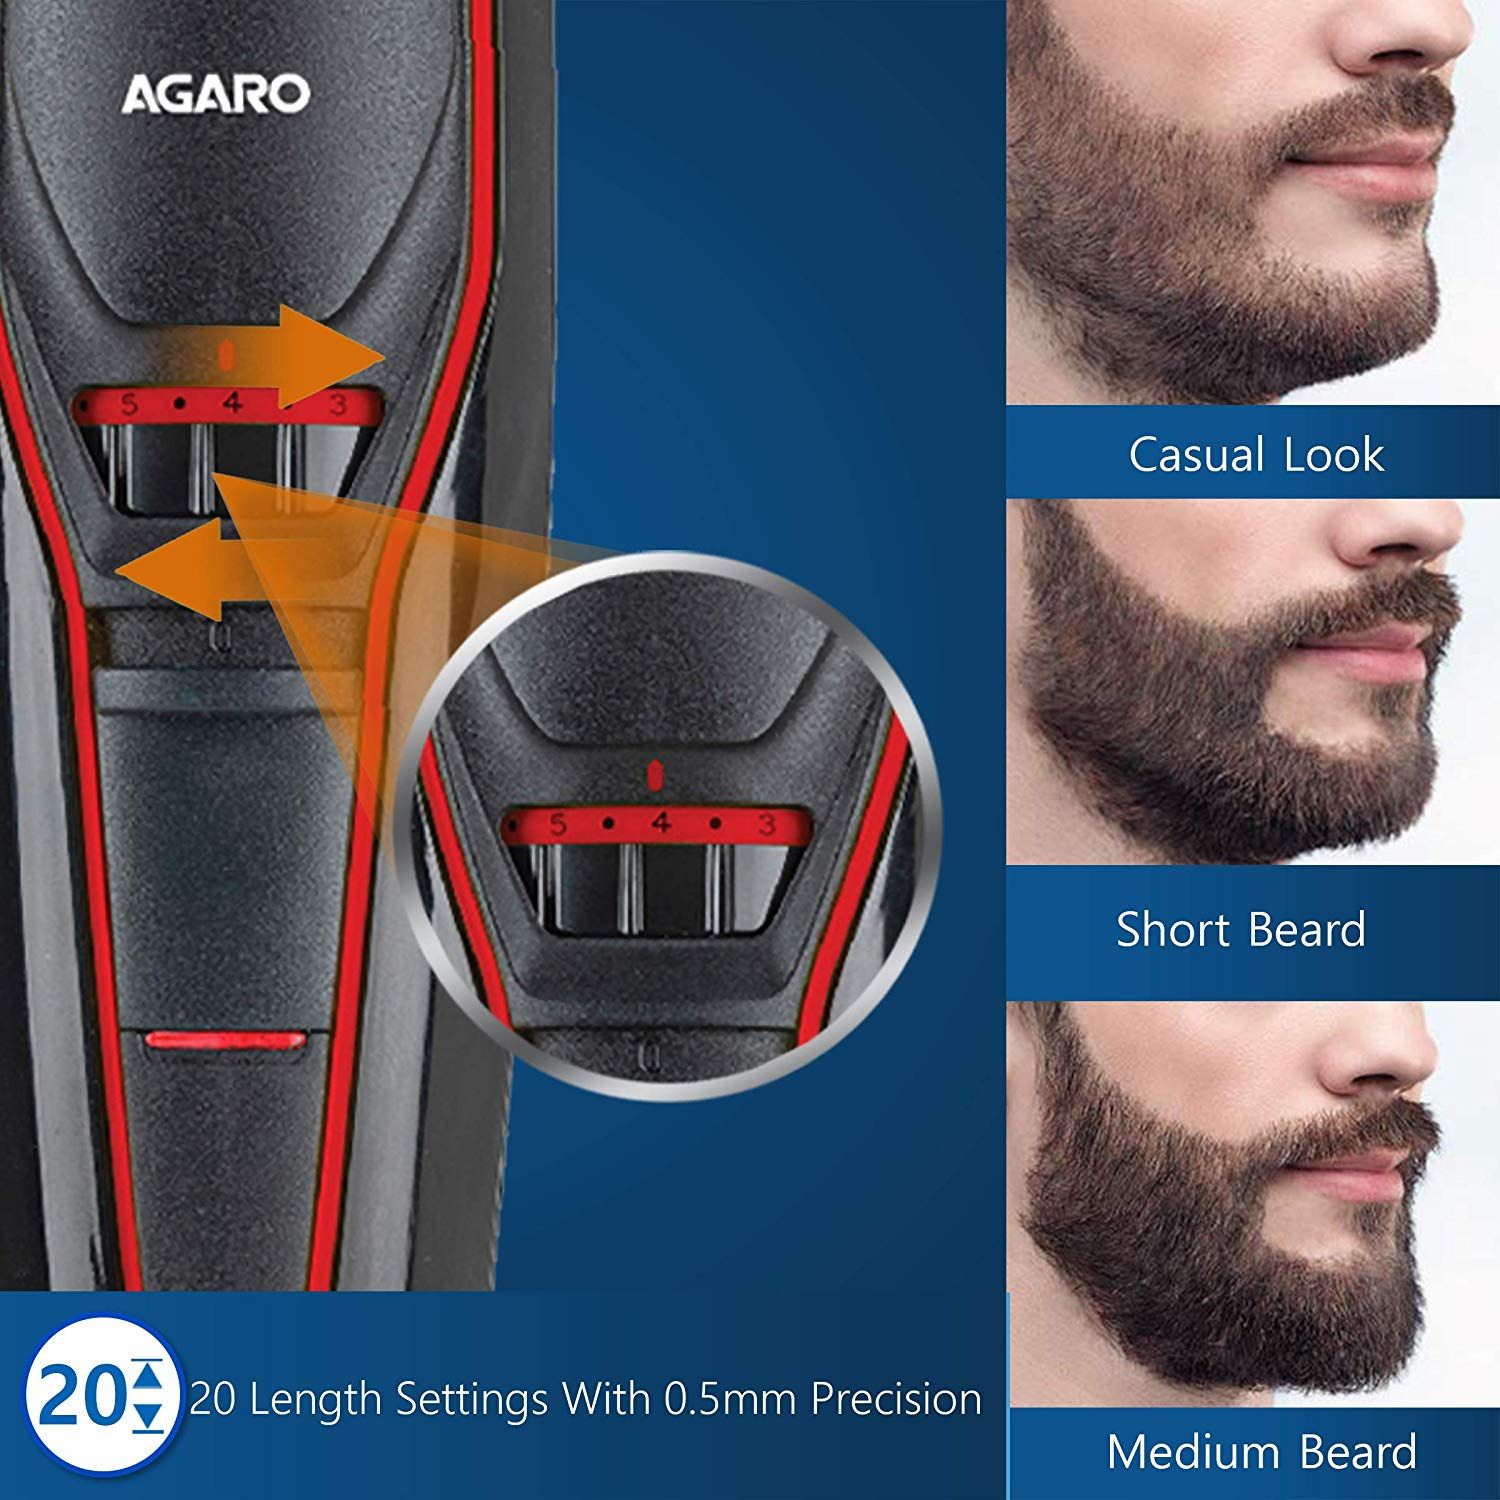 agaro beard trimmer